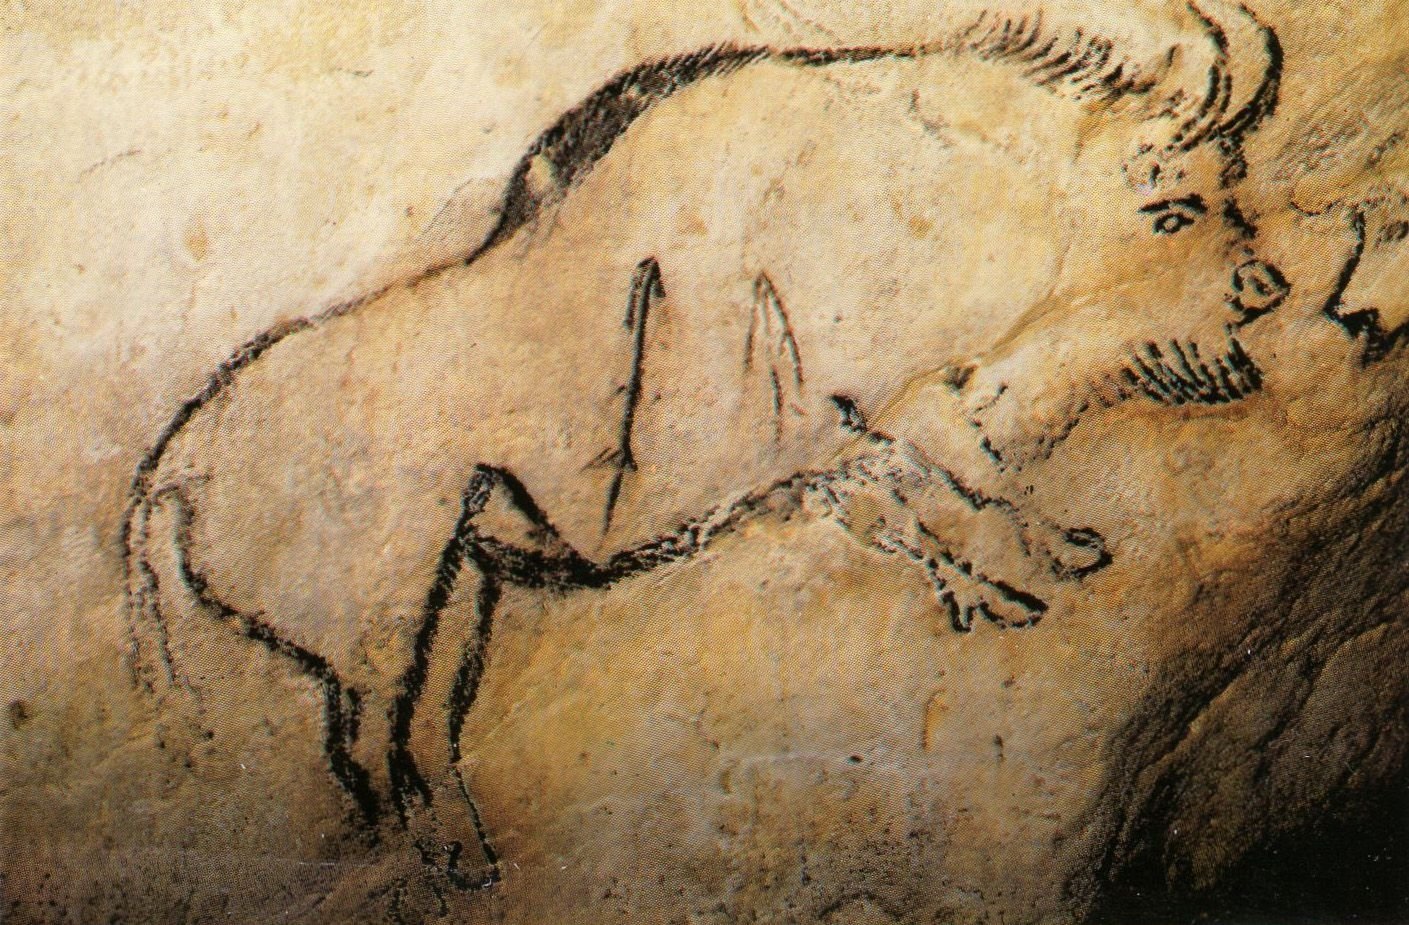 Первобытное изображение человека. Пещера НИО Наскальная живопись. Бизон пещера НИО. Петроглифы палеолита.